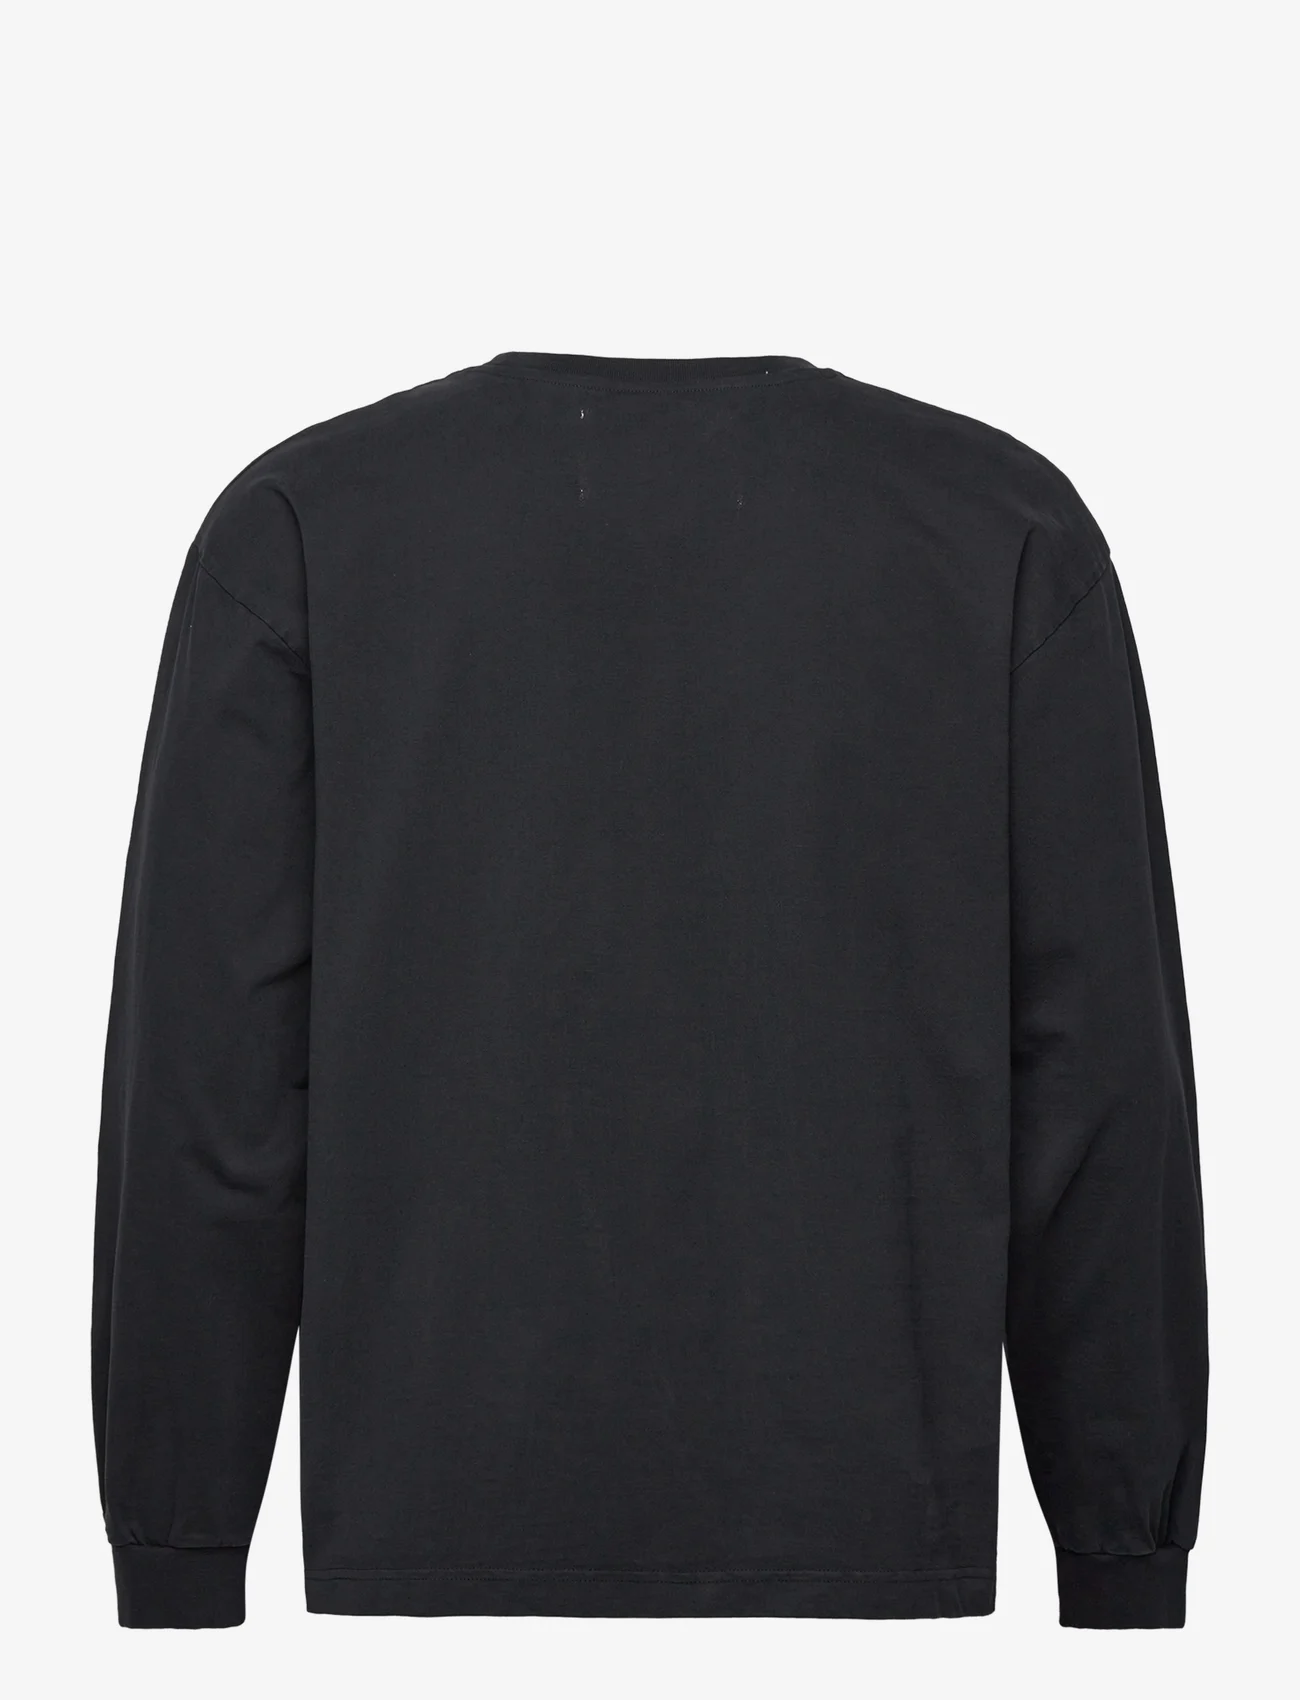 Garment Project - Heavy L/S Tee - Black - långärmade t-shirts - black - 1